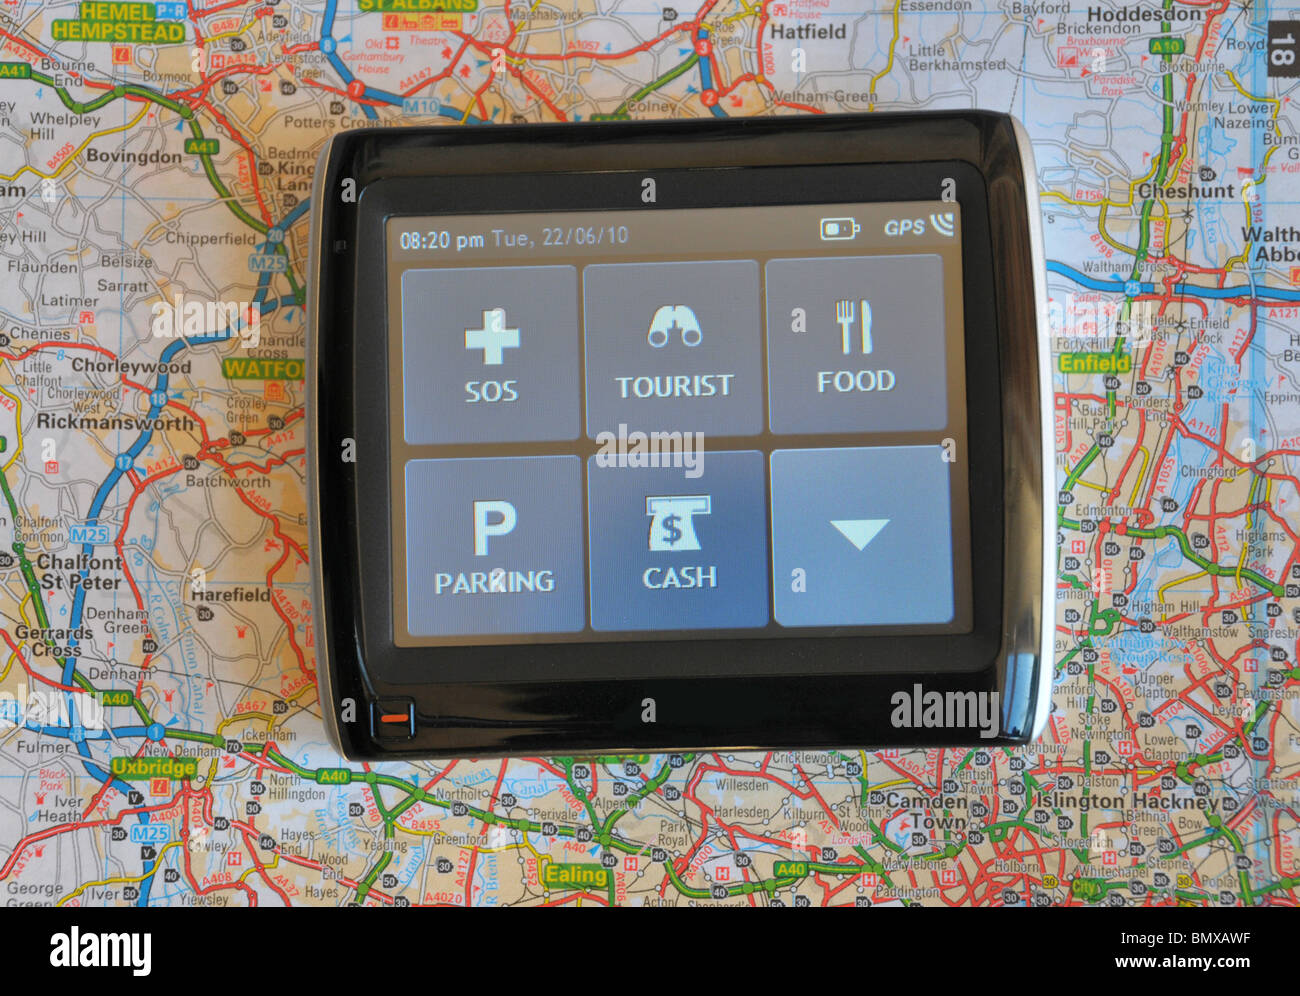 Système de navigation est situé sur une route avec un écran tactile affichant les sous-menus de l'information de voyage. Banque D'Images